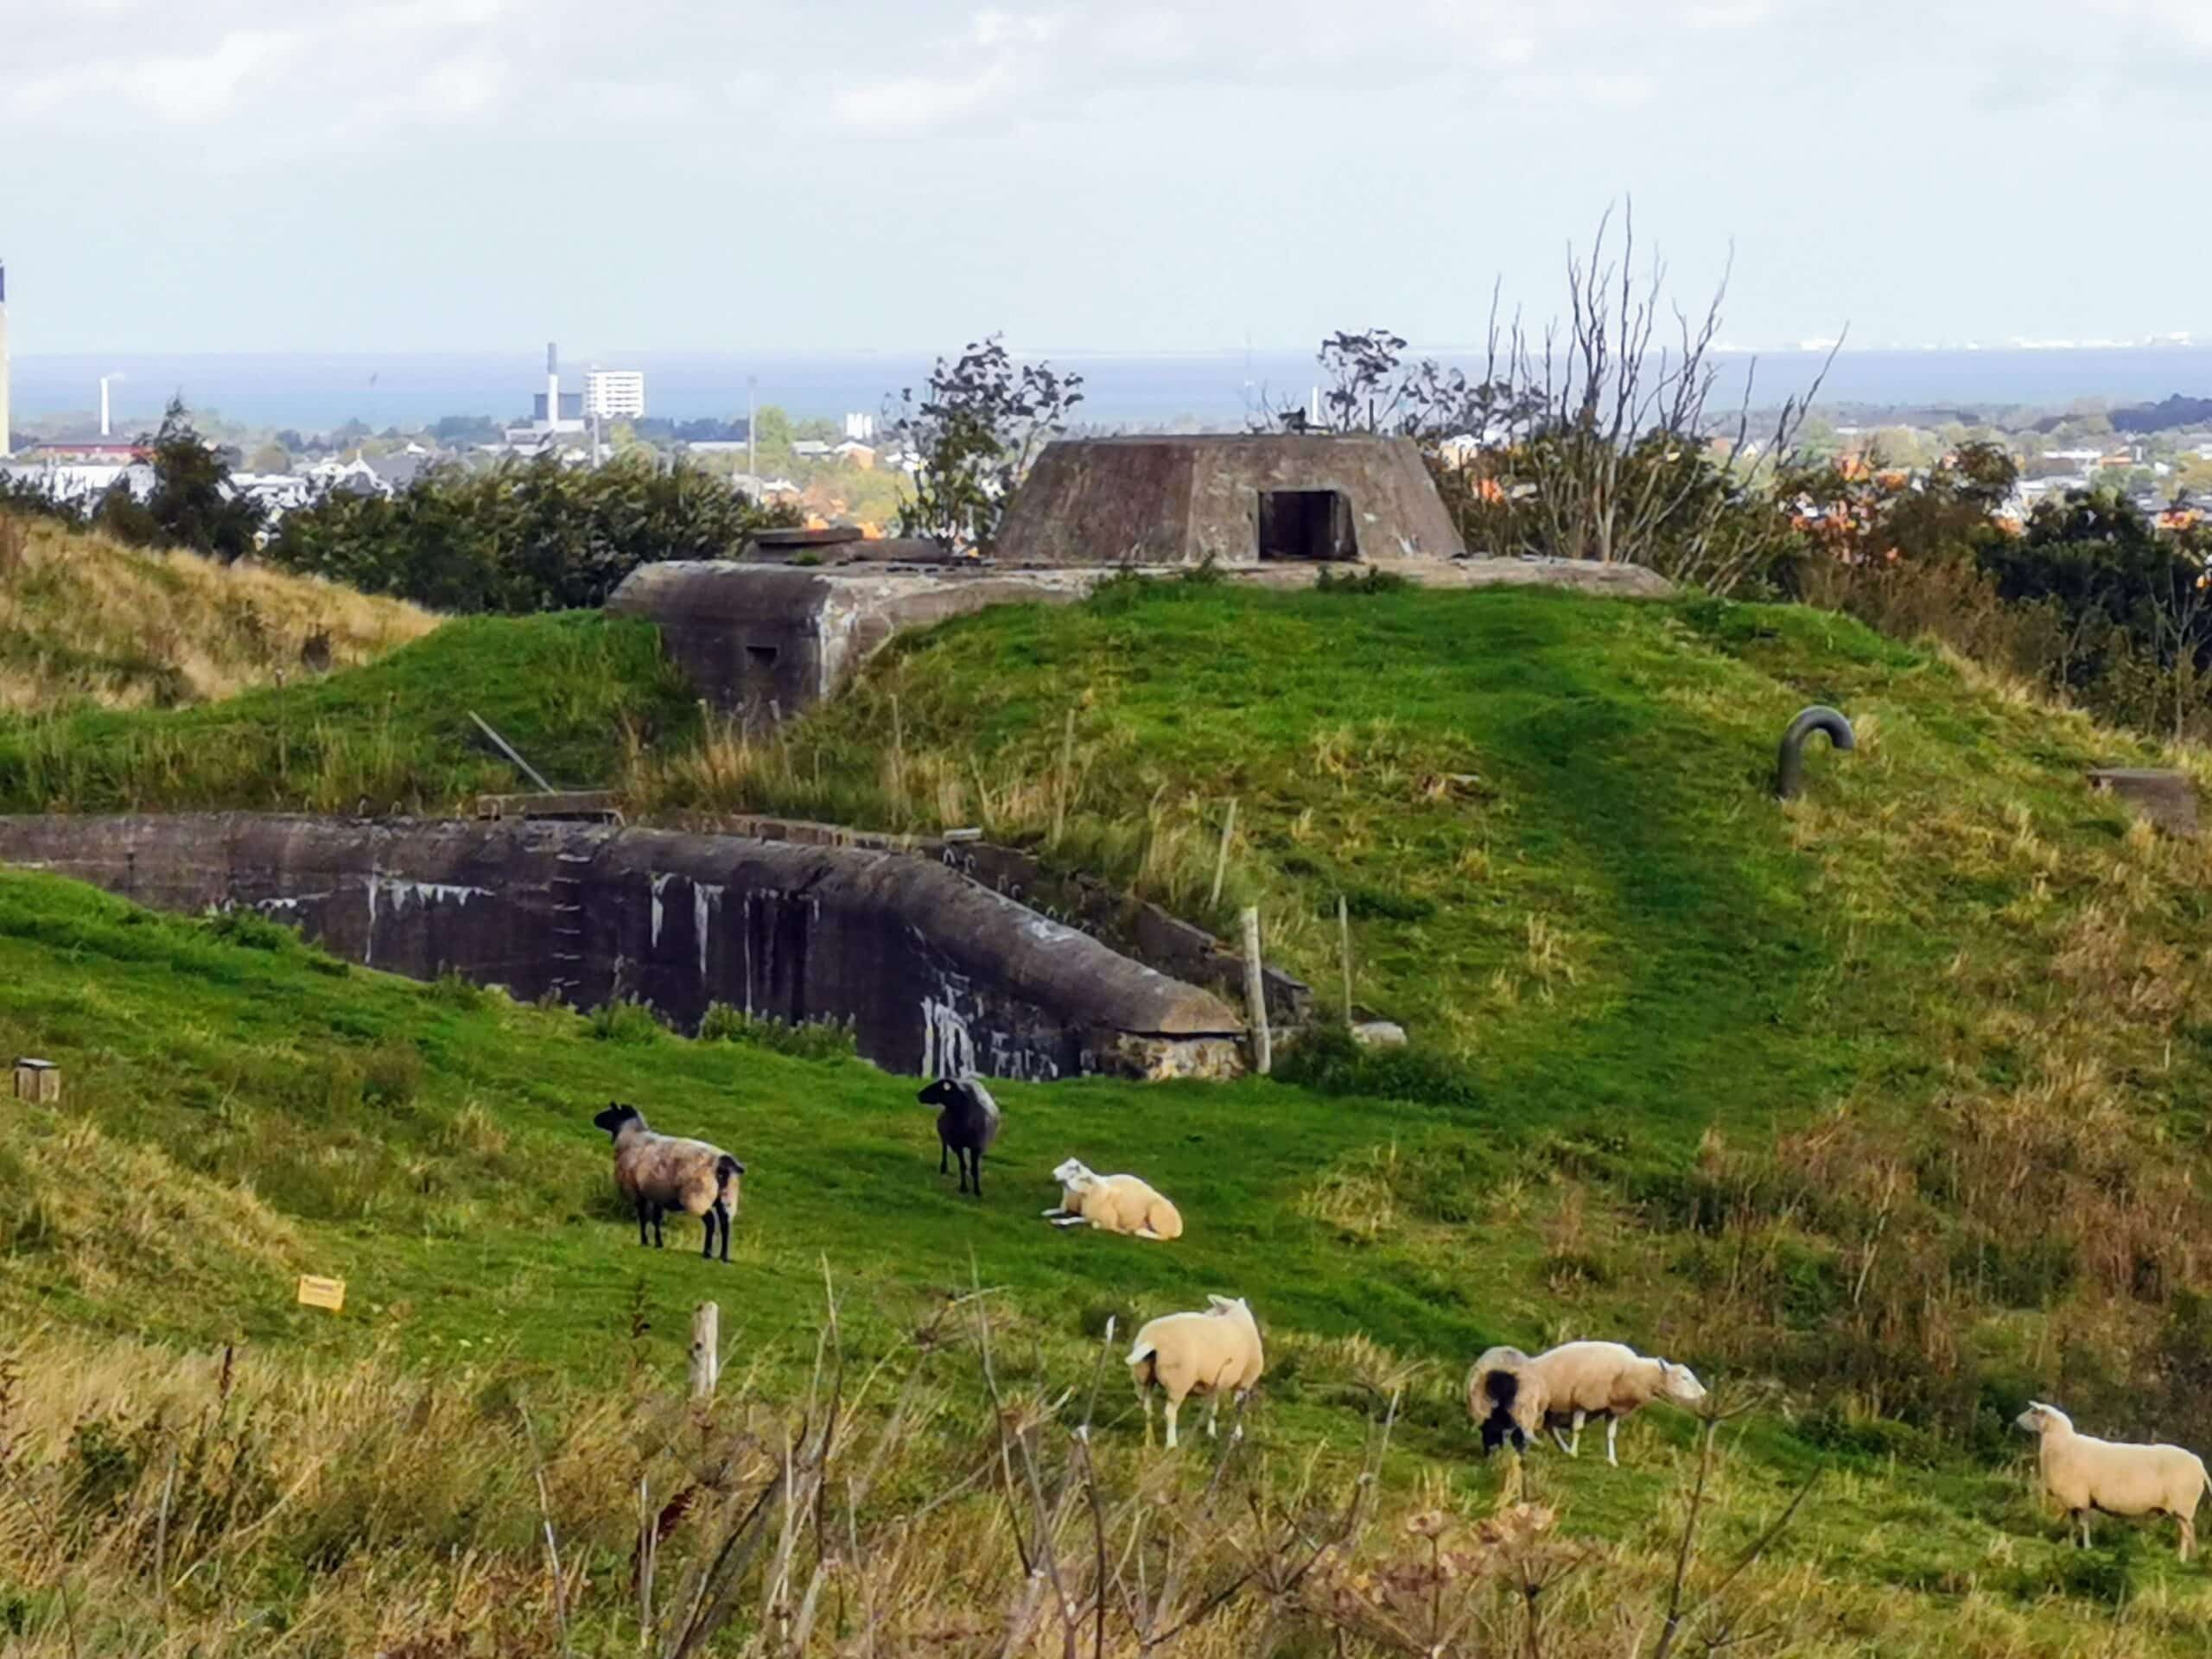 Schafe grasen auf einem grasbewachsenen Hügel neben einer Festung.